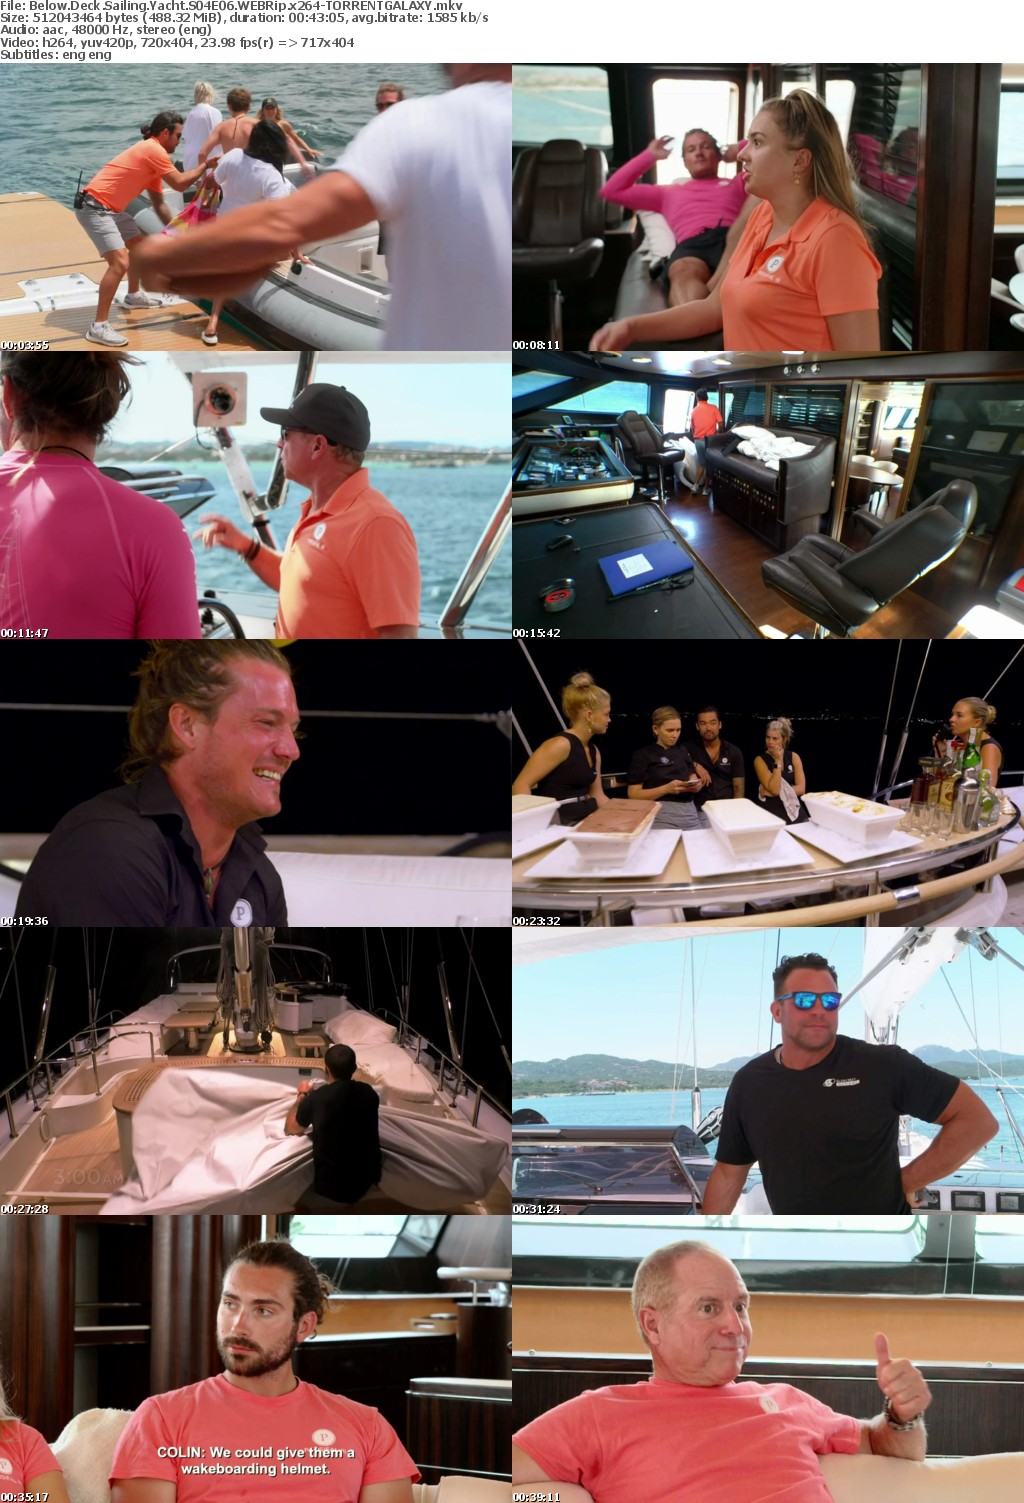 Below Deck Sailing Yacht S04E06 WEBRip x264-GALAXY